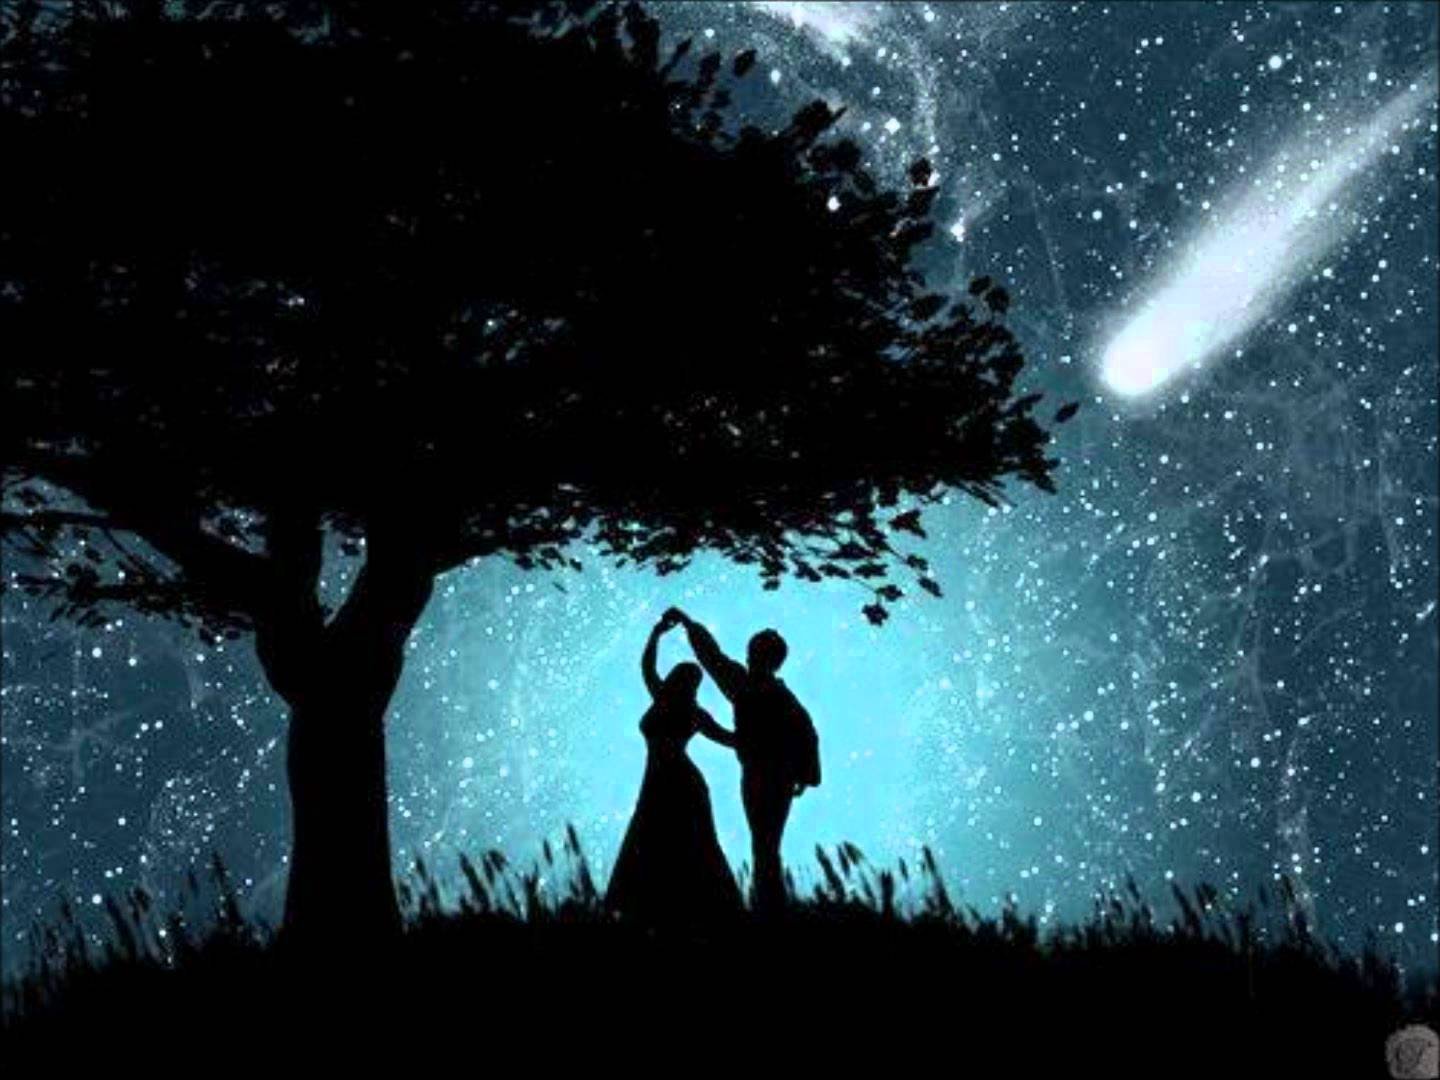 Dream each. Влюбленные под звездным небом. Пара на фоне ночного неба. Поцелуй под звездным небом. Силуэт на фоне звездного неба.